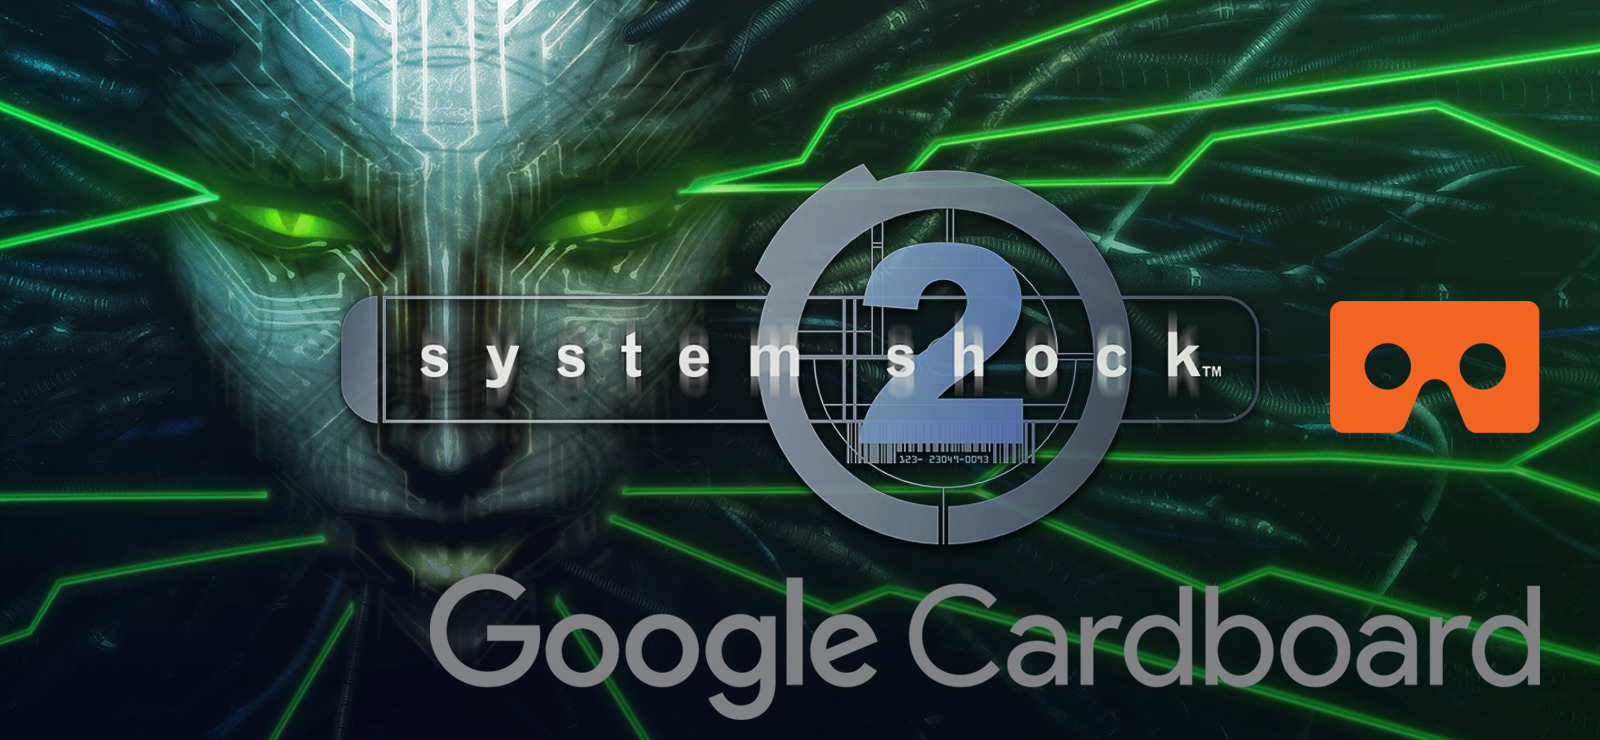 System Shock 2 in Google Cardboard VR